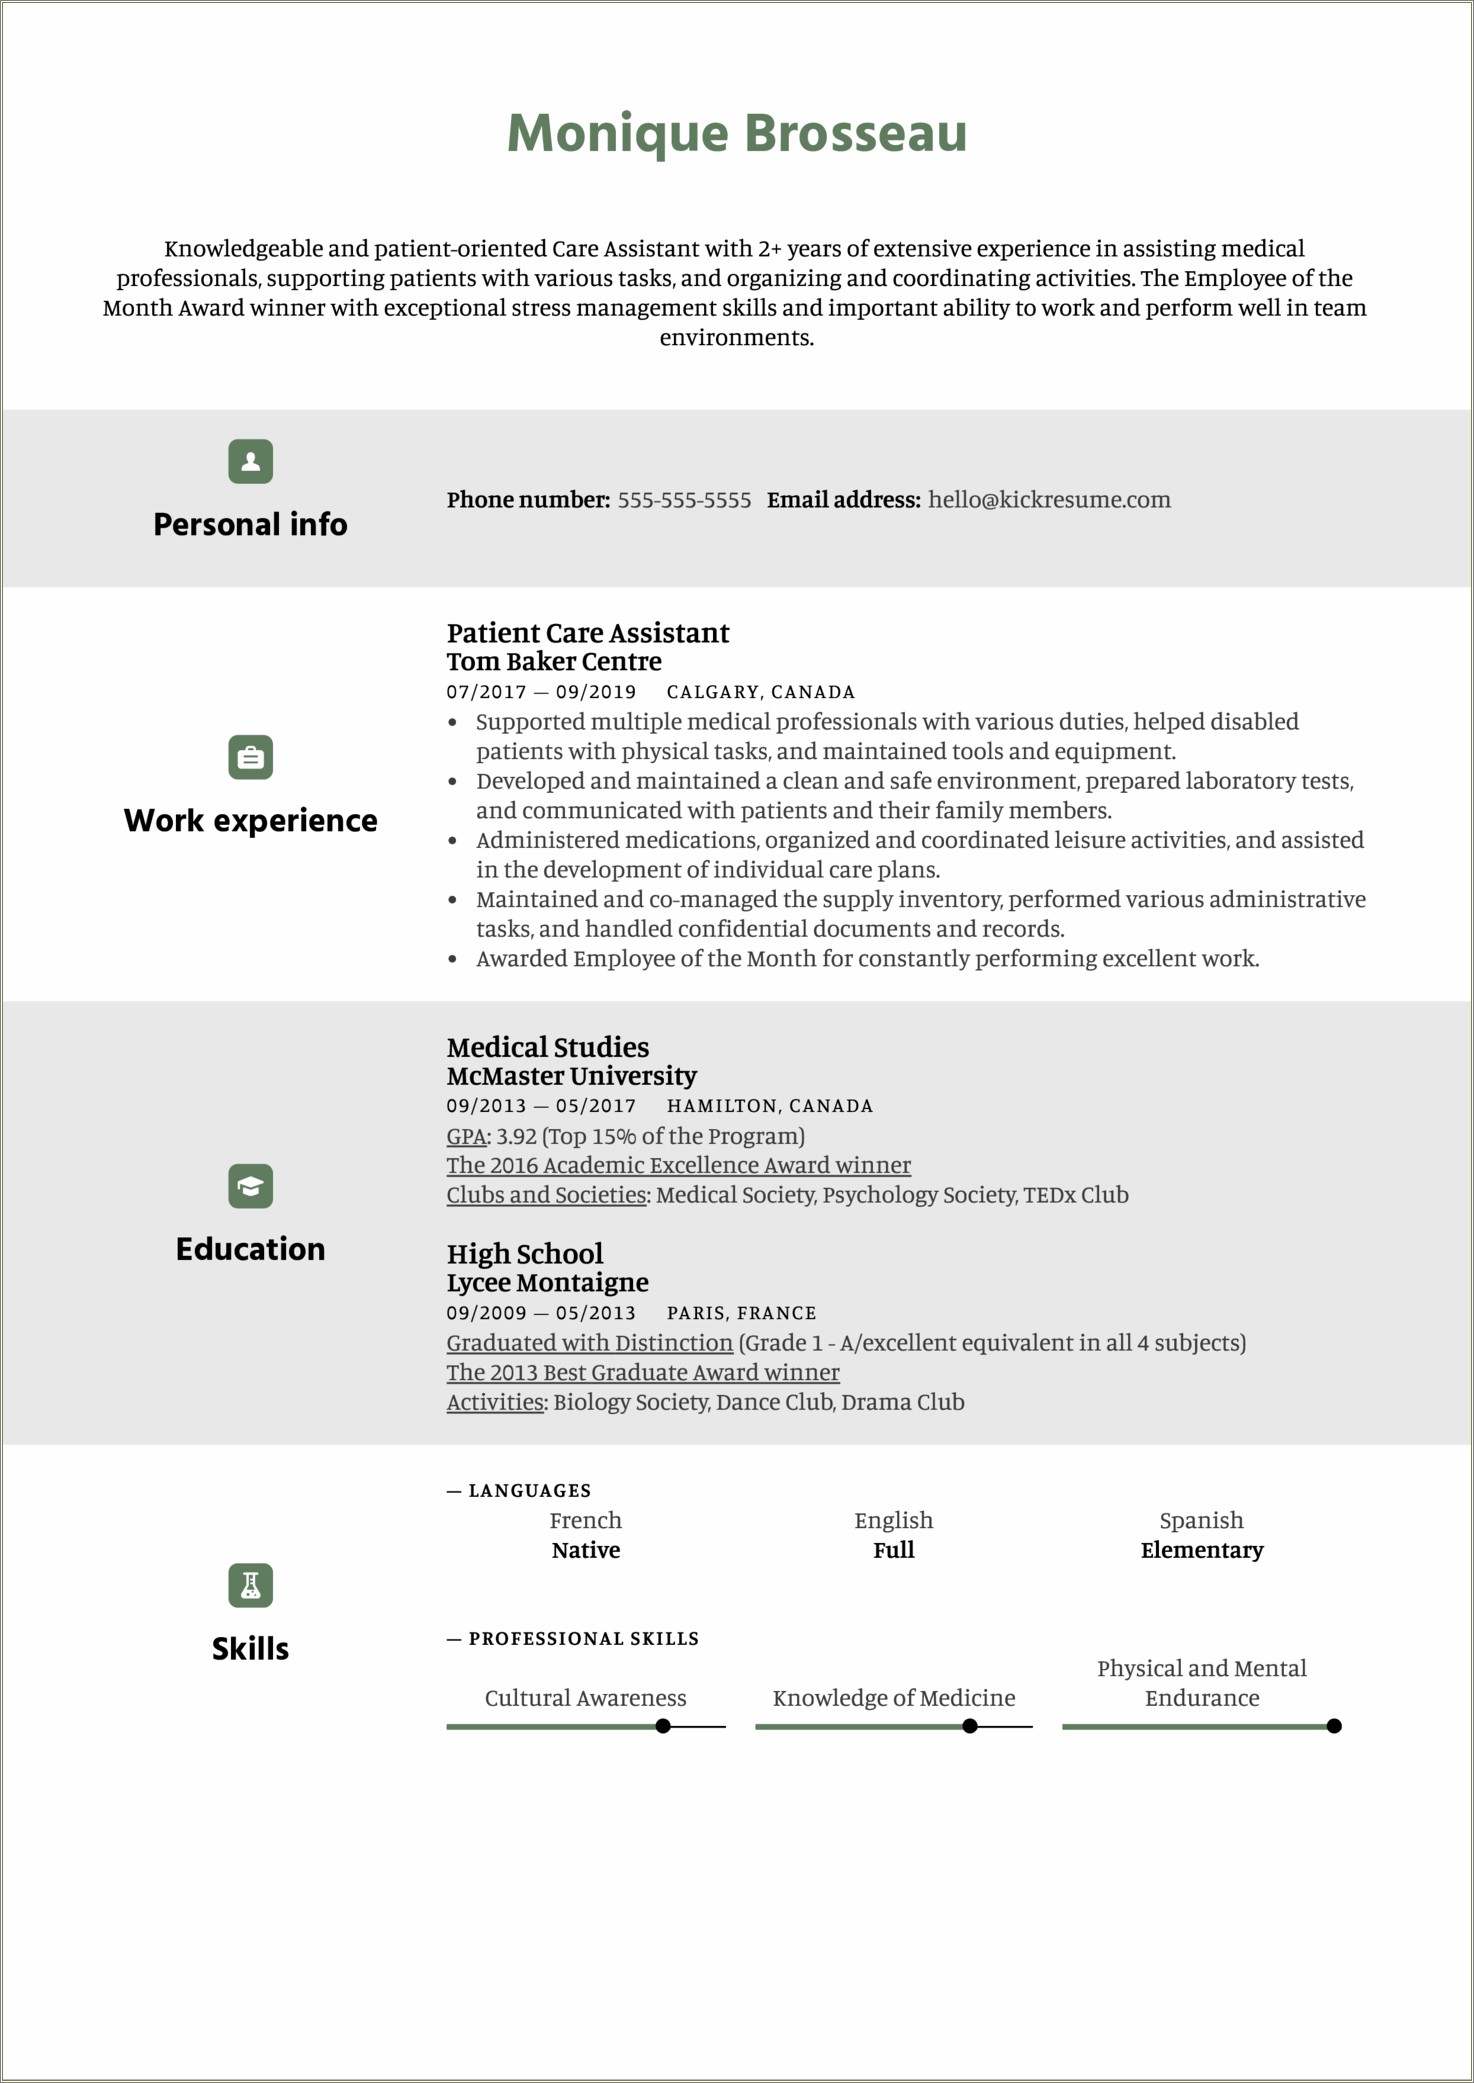 Resume Description For Patient Care Assistant